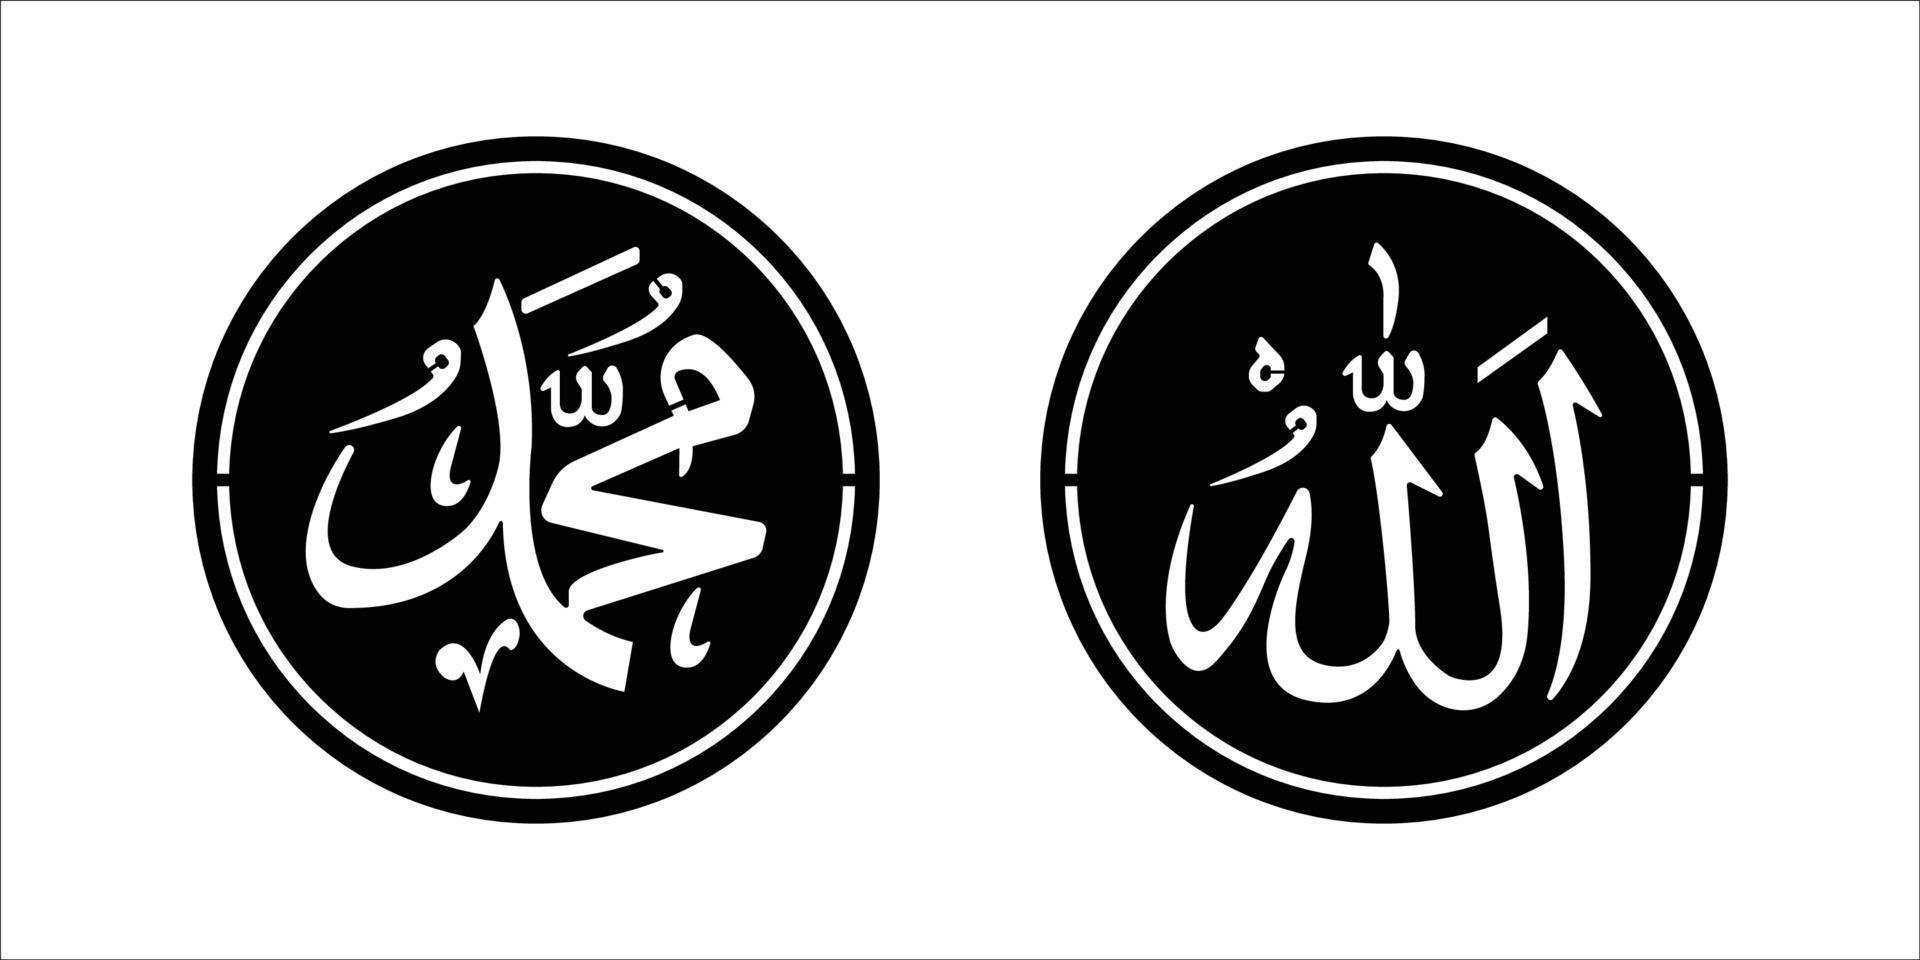 kalligrafi av allah och muhammad design för laserskärning vektor